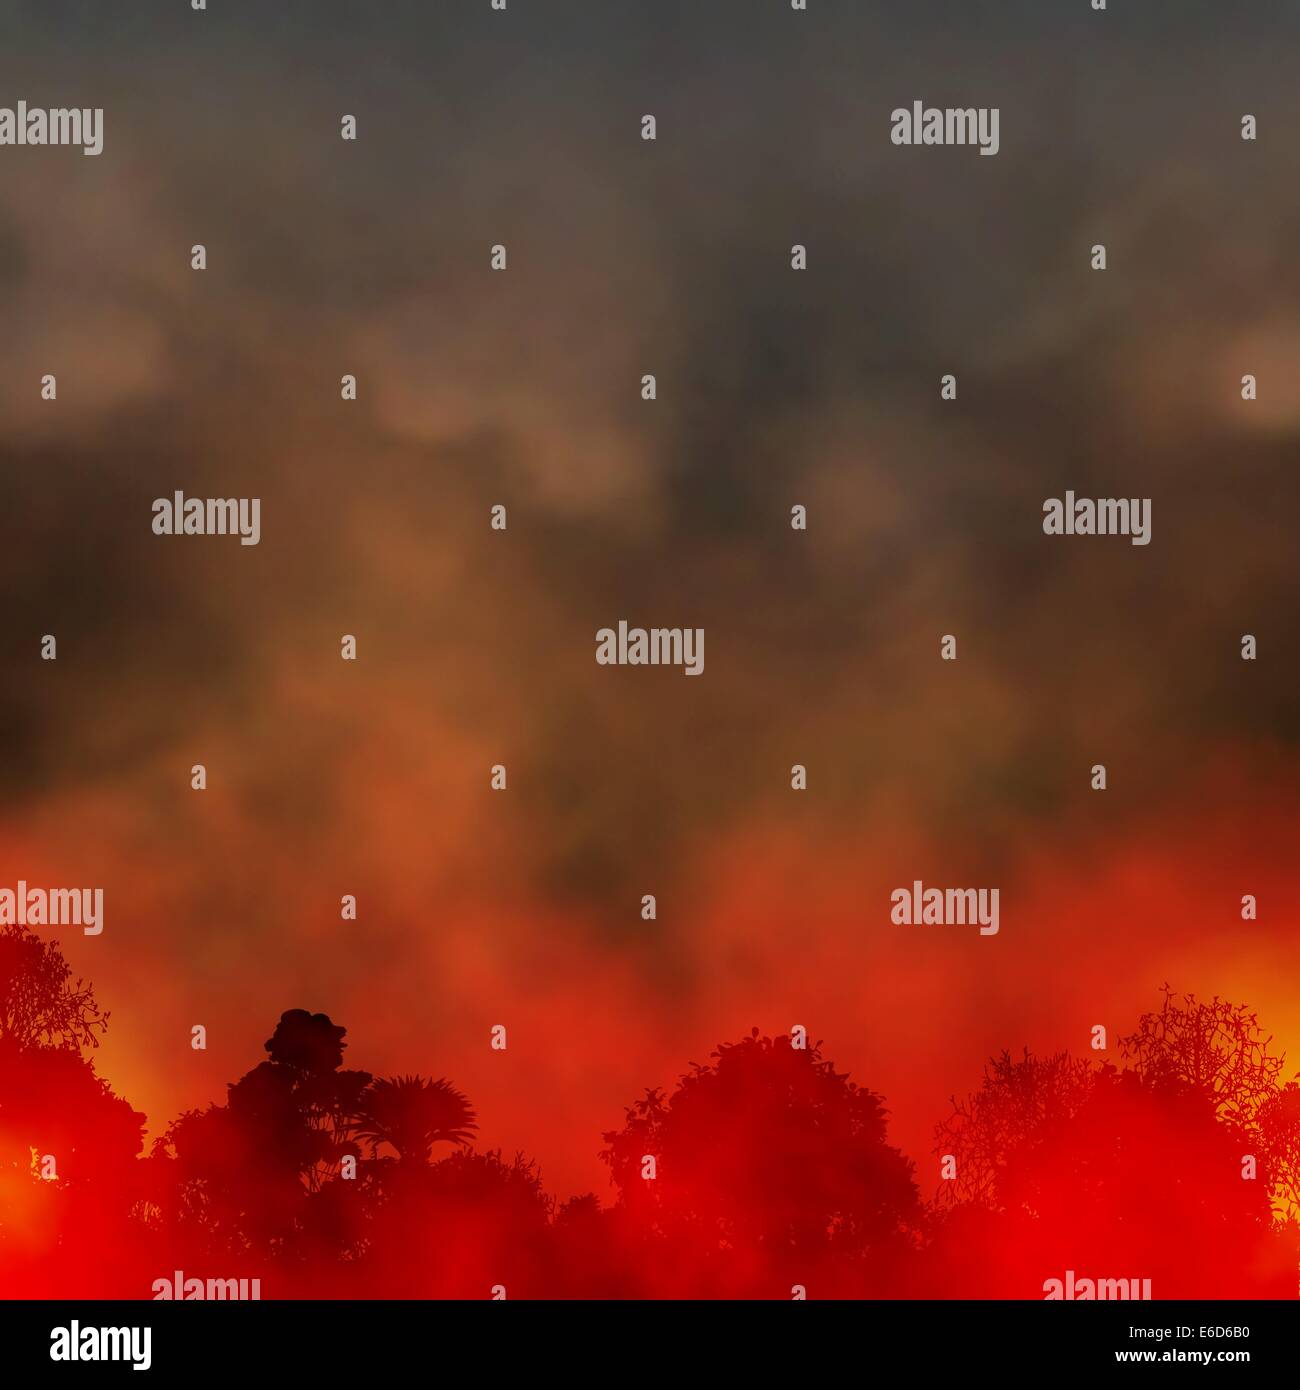 Editierbare Vektorgrafik EPS10 von einem rauchigen Waldbrand unter Verwendung einer Verlaufsgitter Stock Vektor